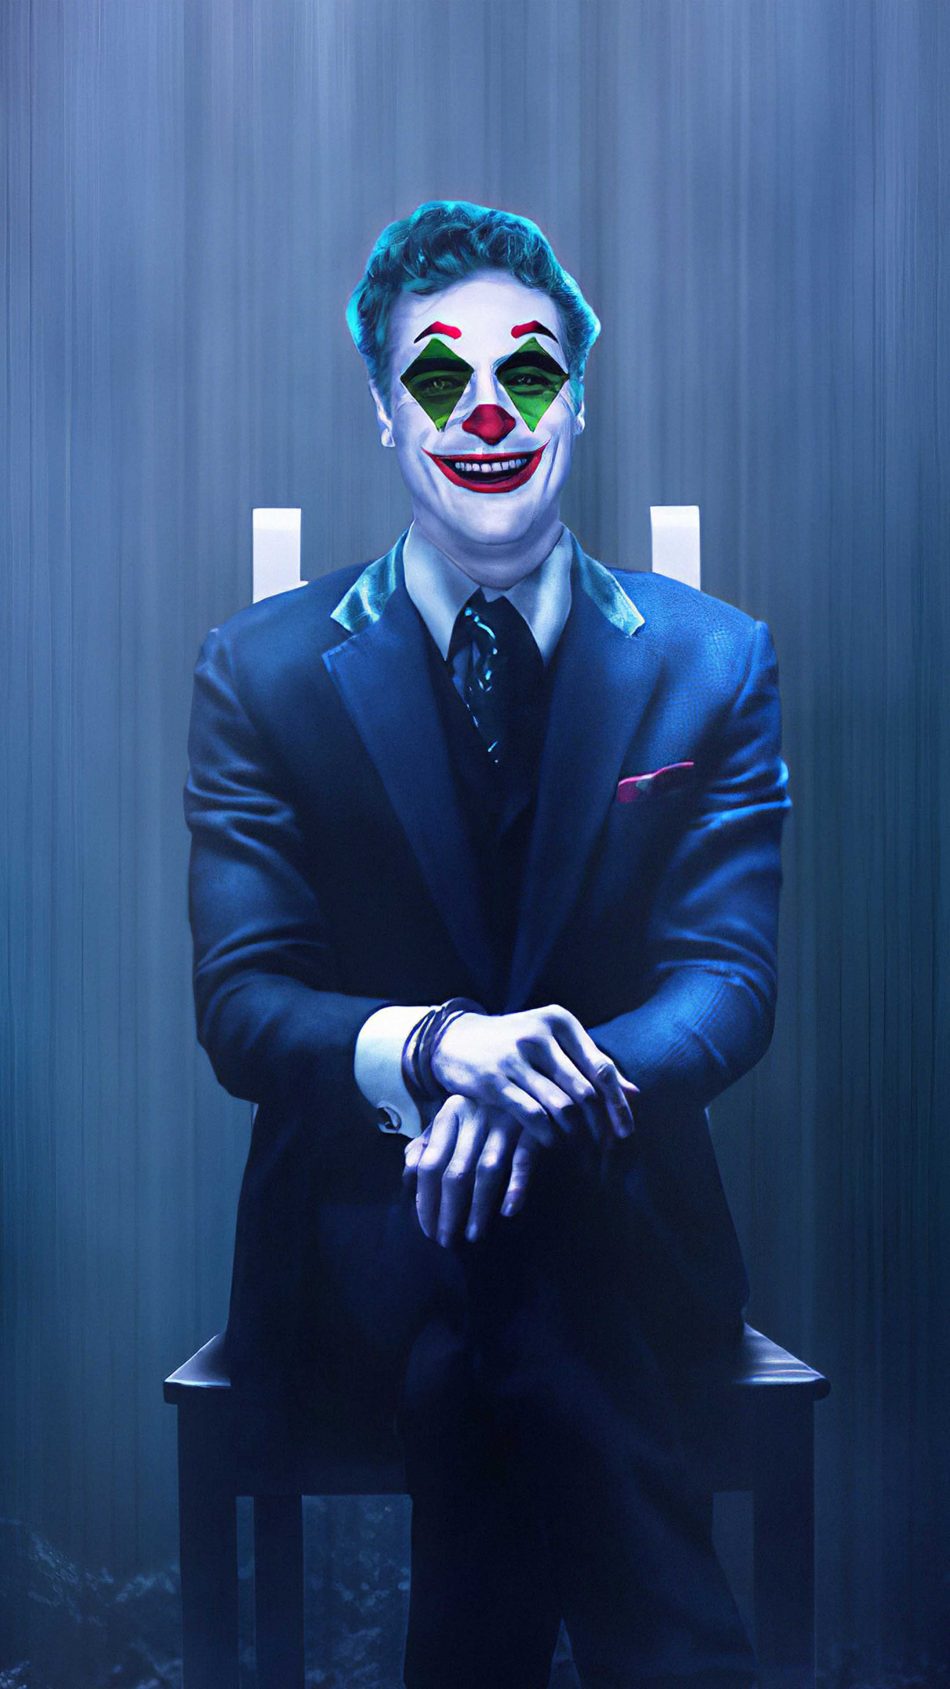 Wallpaper 4k joker 140+ Joker